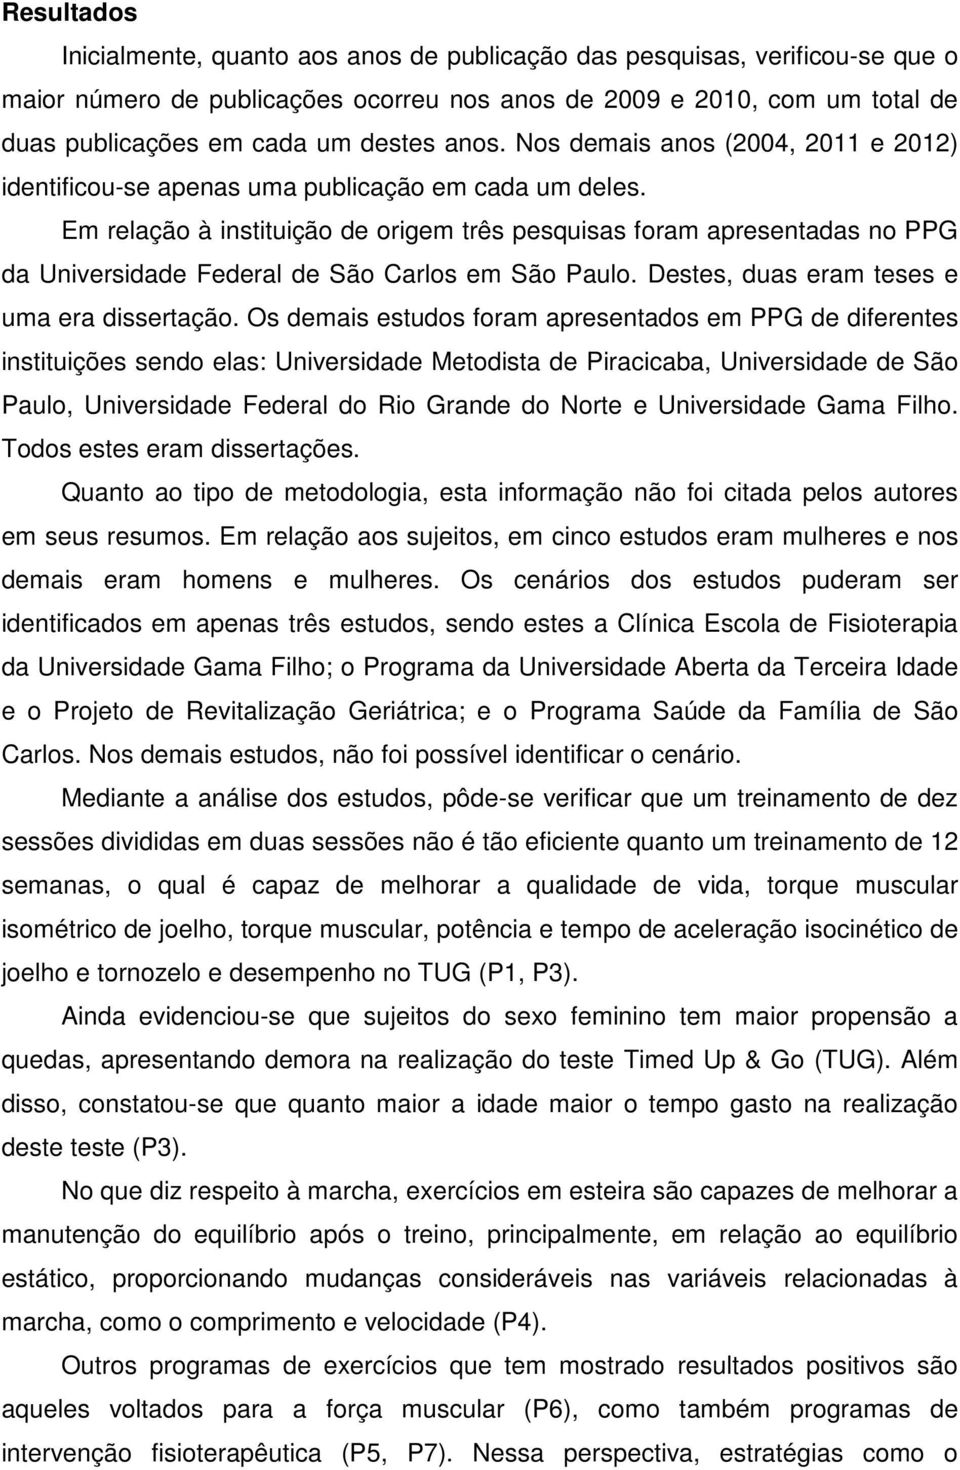 Em relação à instituição de origem três pesquisas foram apresentadas no PPG da Universidade Federal de São Carlos em São Paulo. Destes, duas eram teses e uma era dissertação.